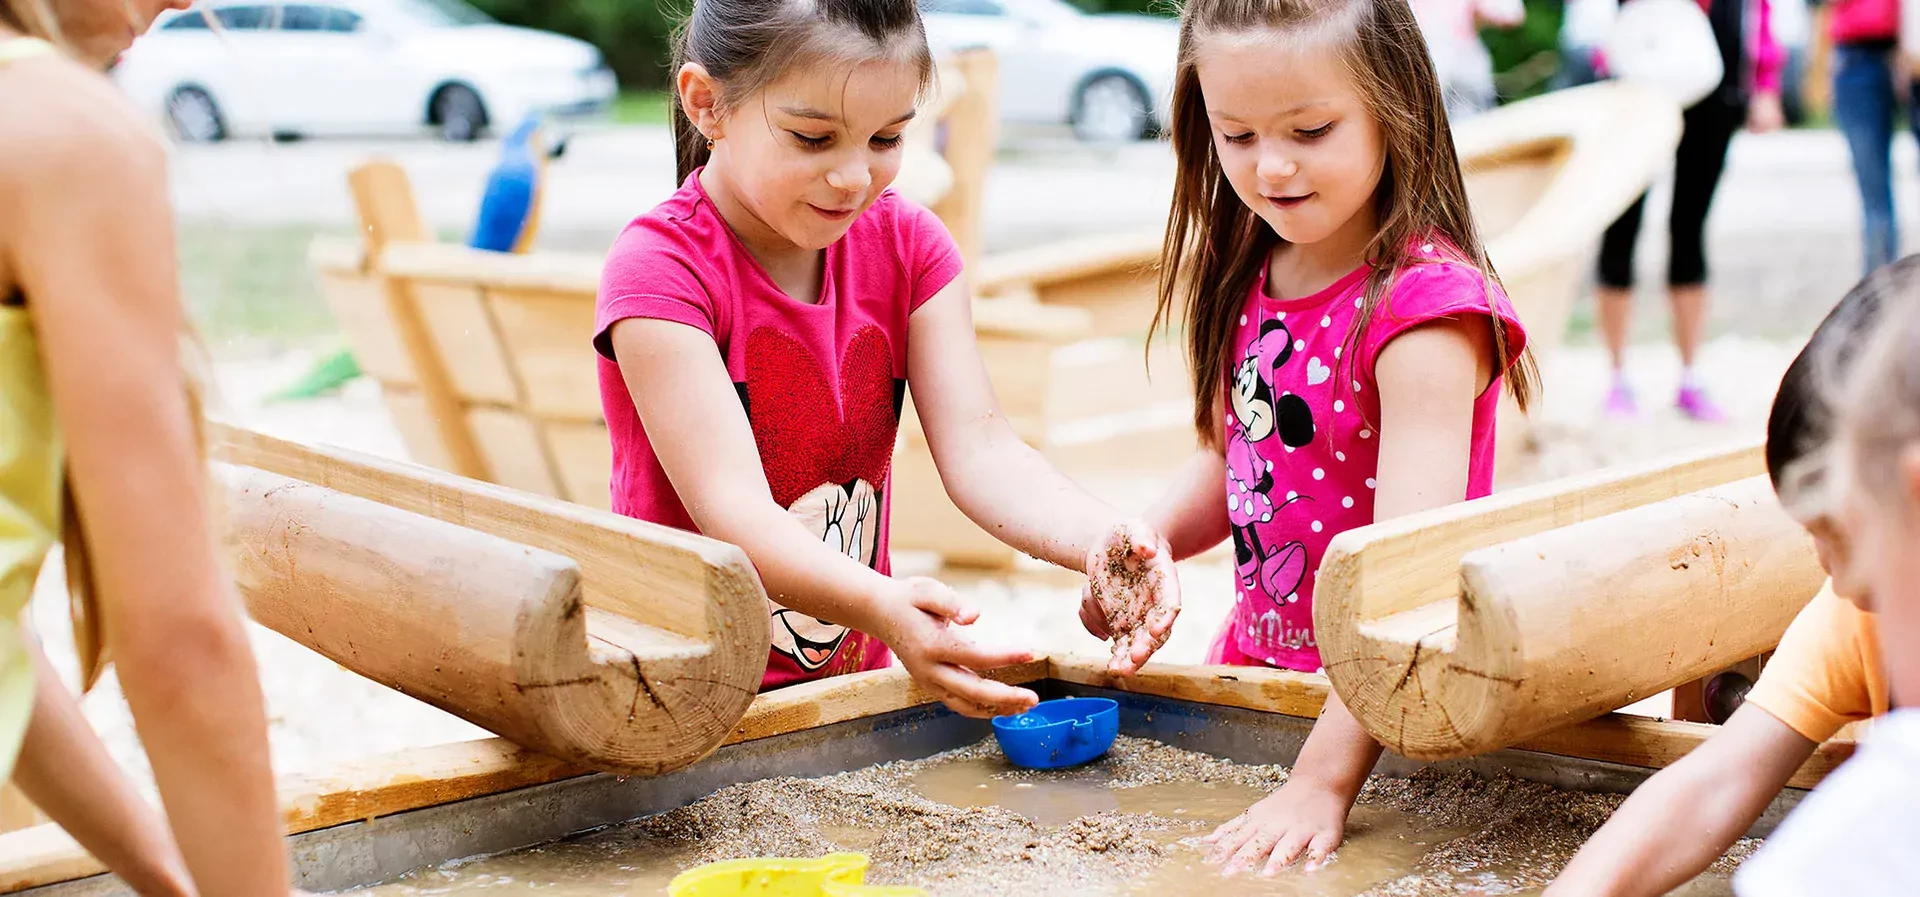 kinderen spelen op robinia zandtoestellen en watertoestellen speeltuin tafel hero image